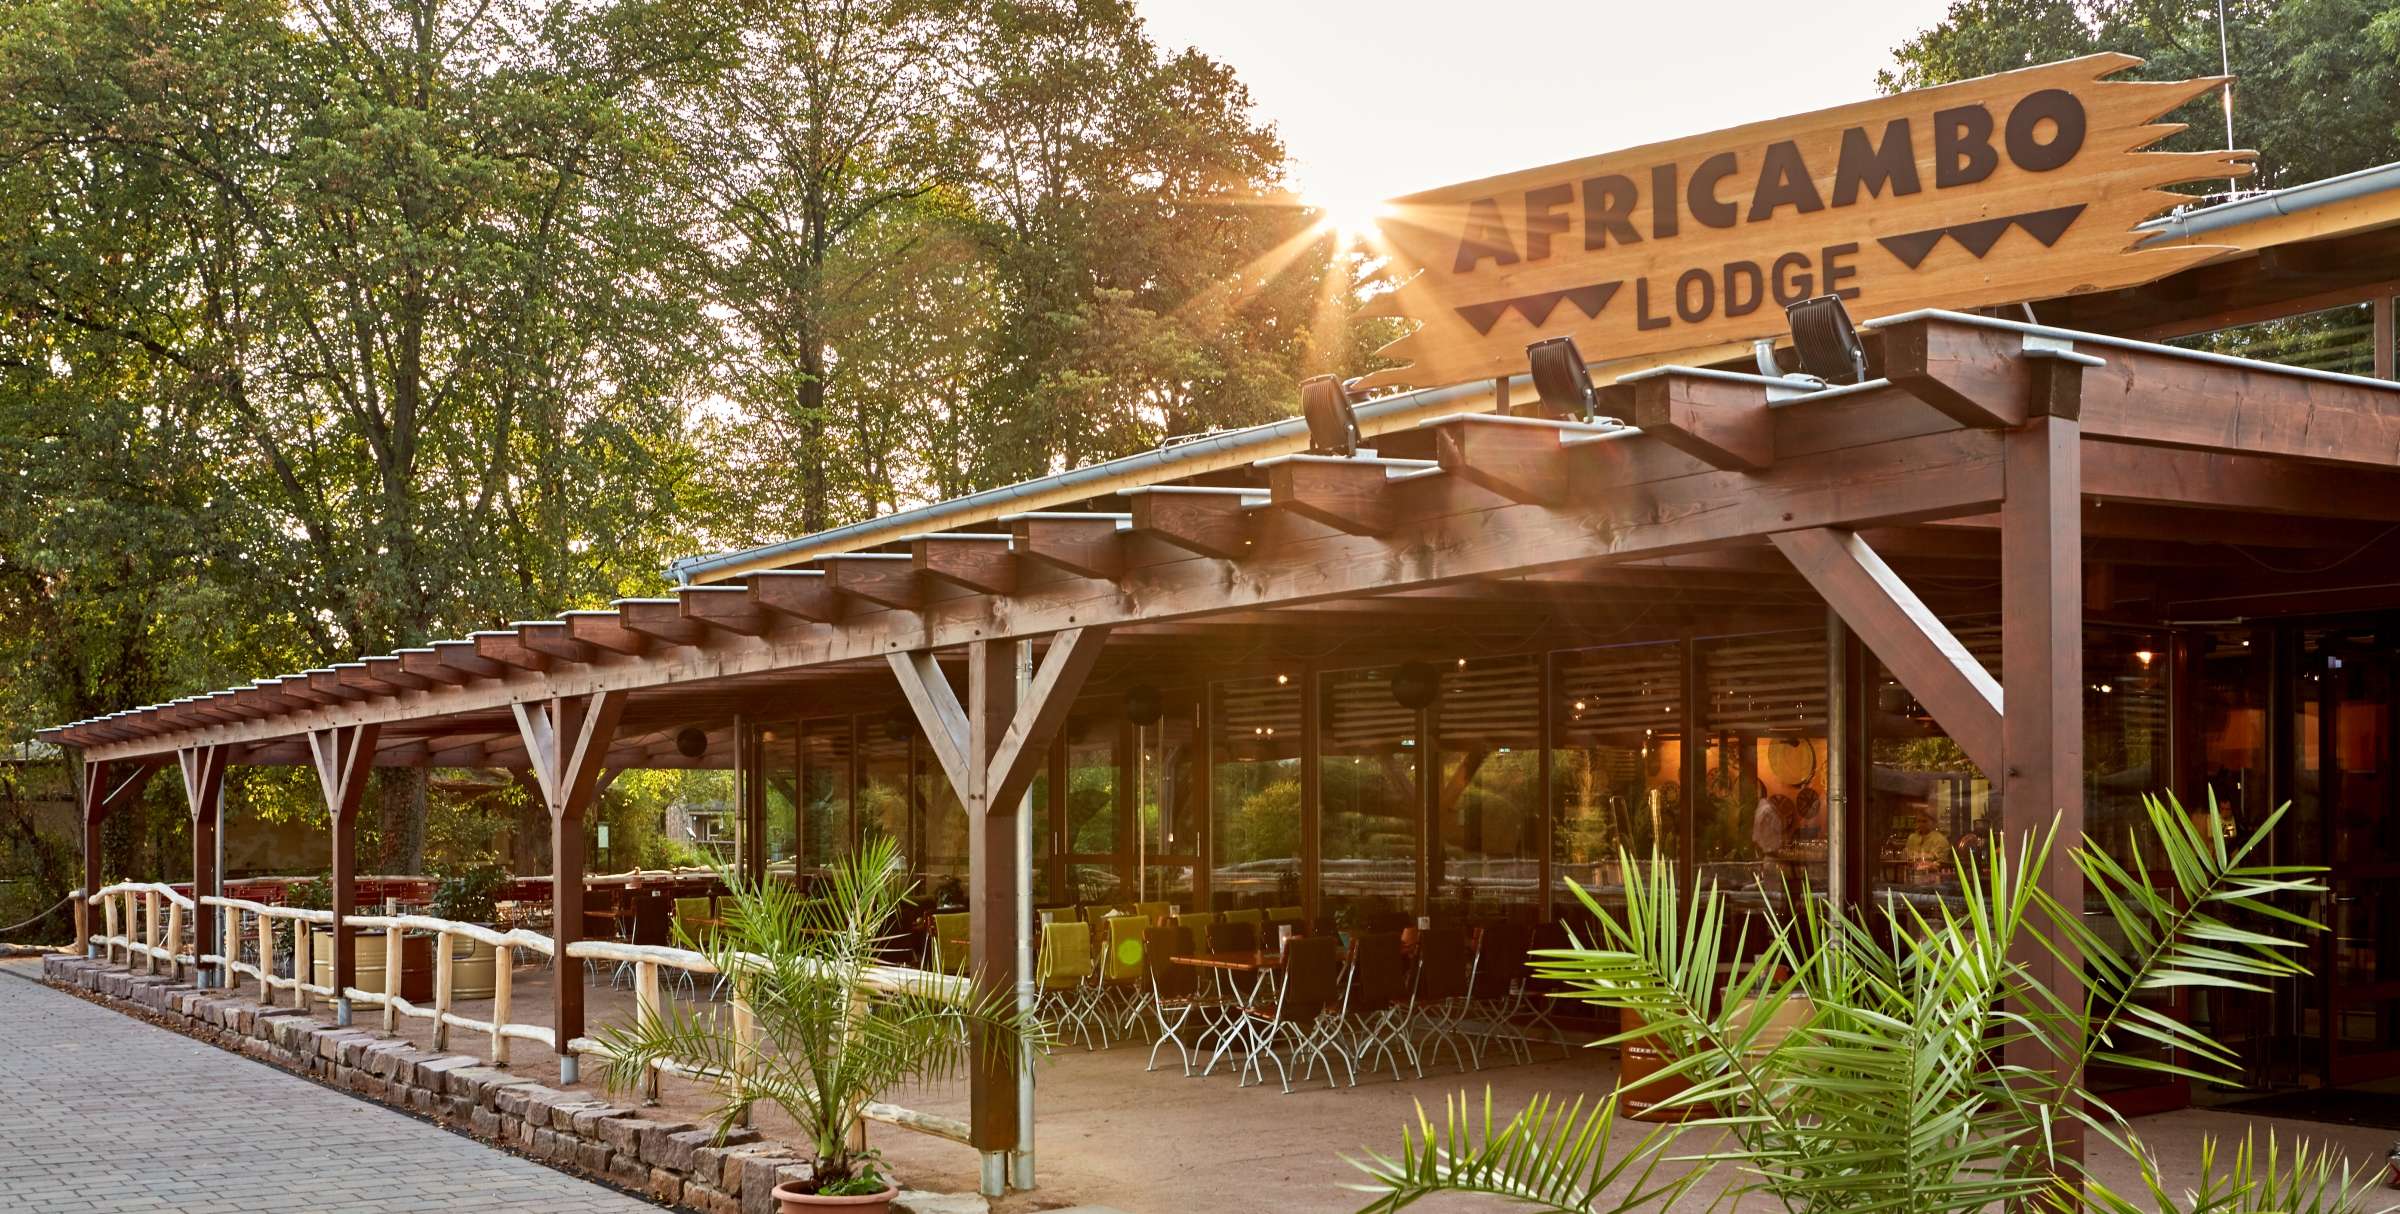 Aussenansicht Africambo Lodge